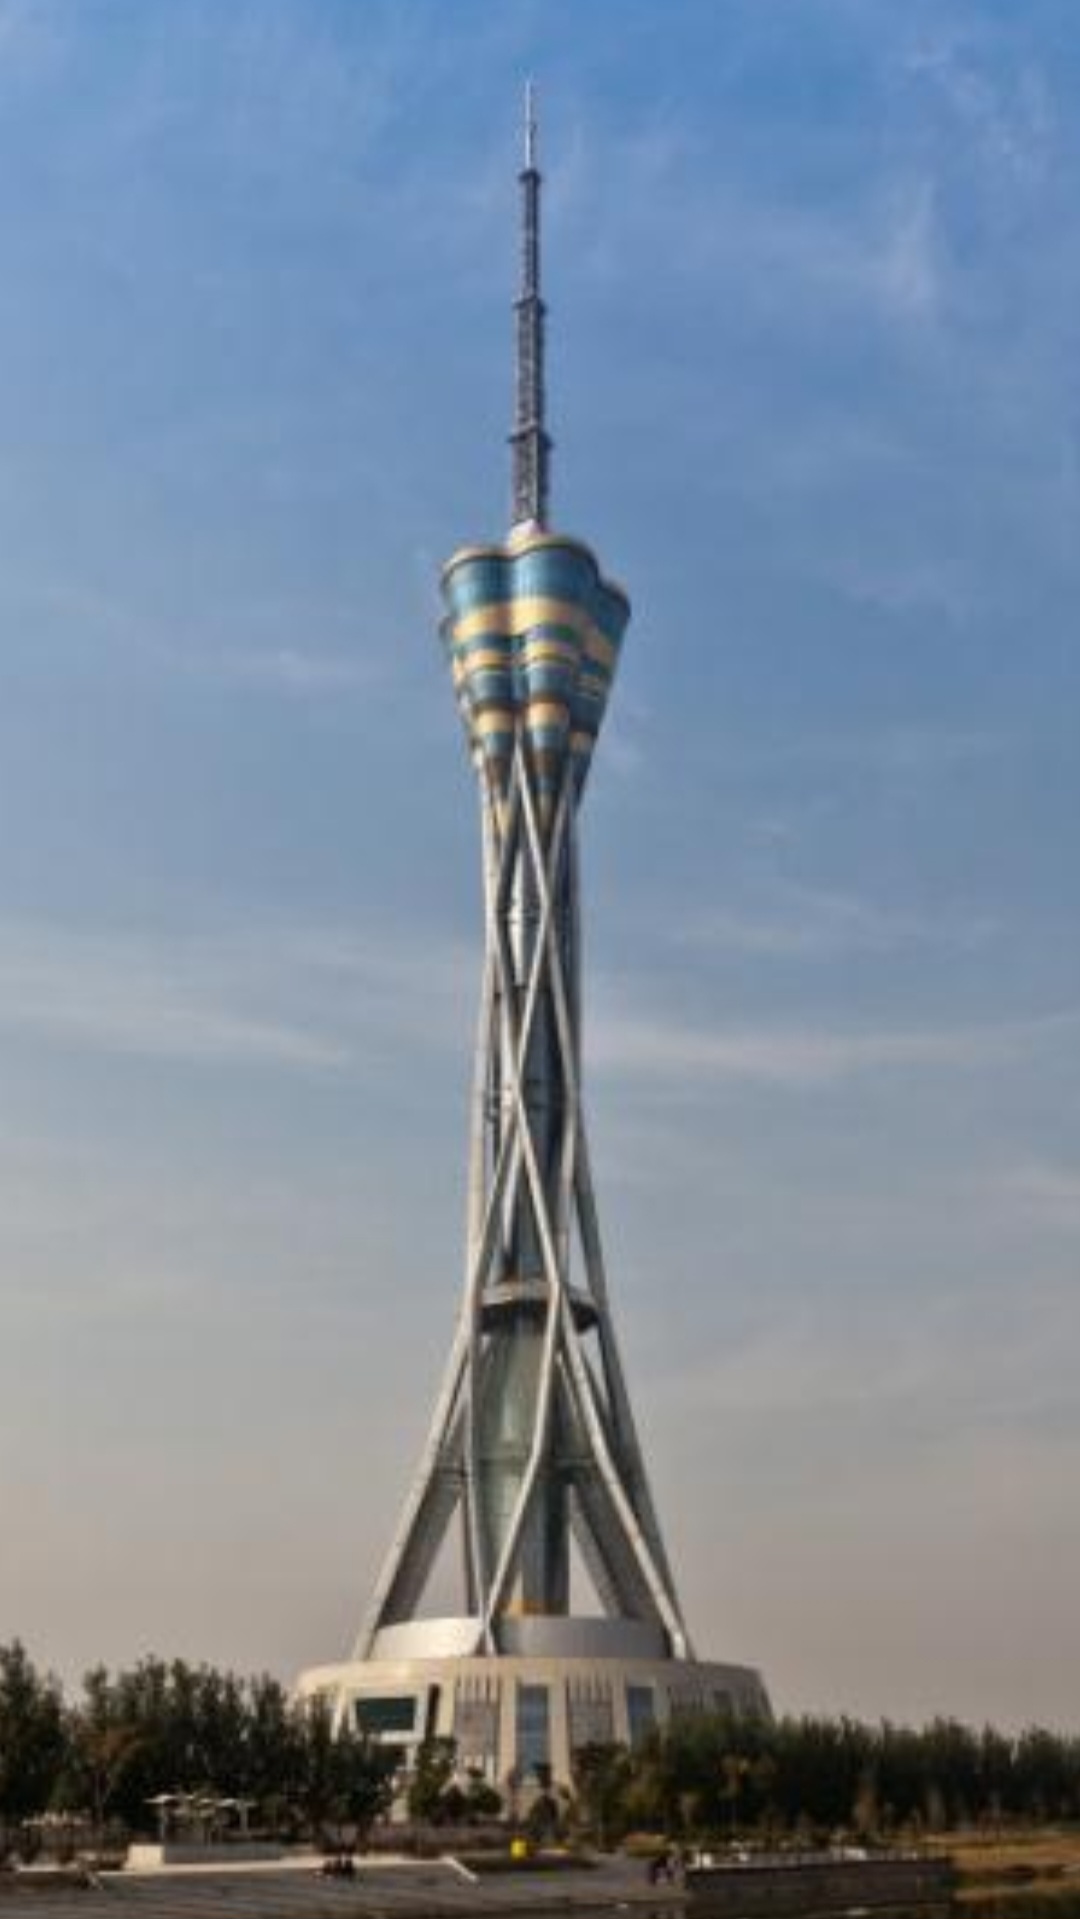 Henan Province Radio e Television Tower - 388 metros - China - Inaugurada em 2011, em Zhengzhou, a torre de telecomunicações conta com vista panorâmica e chama a atenção por sua construção de ferro que lembra caules de árvores. 